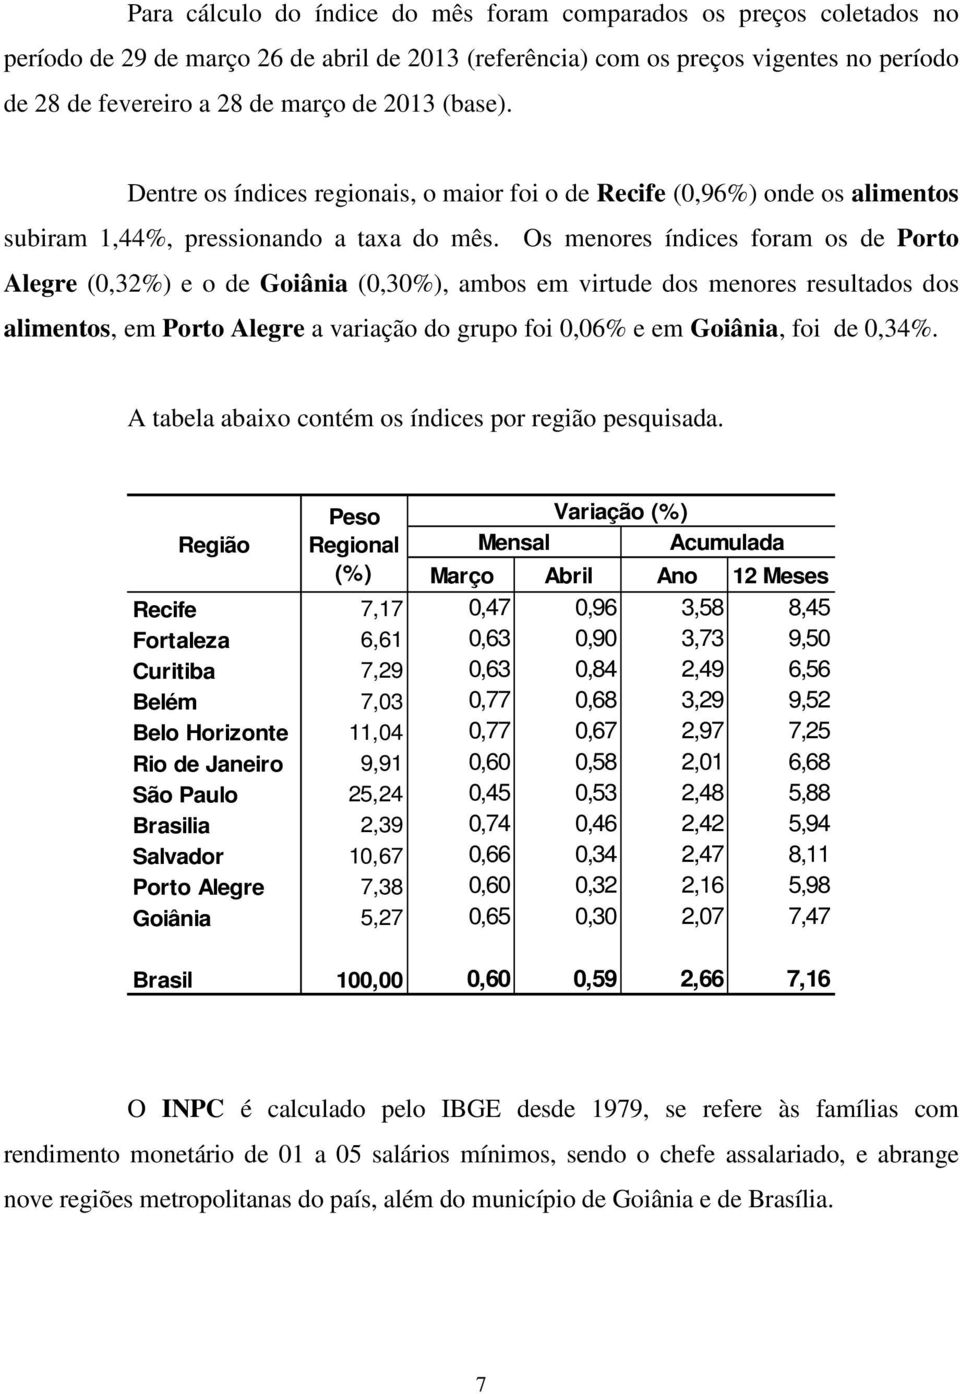 Os menores índices foram os de Porto Alegre (0,32%) e o de Goiânia (0,30%), ambos em virtude dos menores resultados dos alimentos, em Porto Alegre a variação do grupo foi 0,06% e em Goiânia, foi de